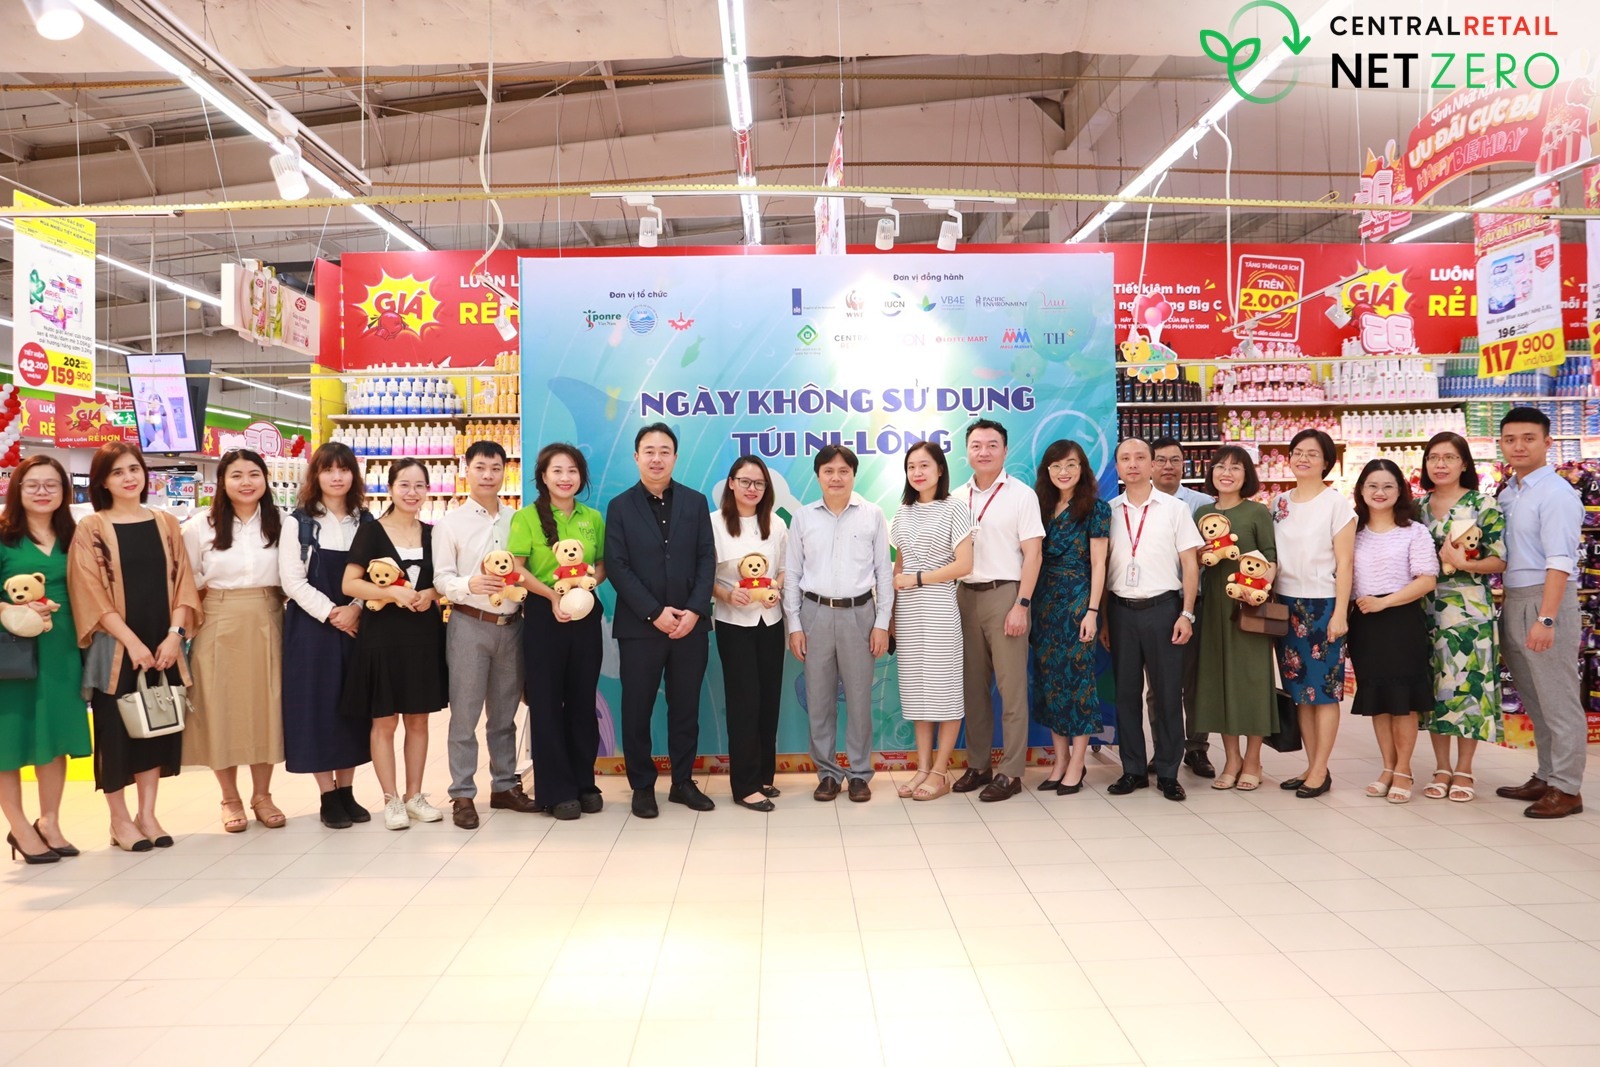 Central Retail Việt Nam phát động chương trình “Ngày Không Túi Nilong” khuyến khích người tiêu dùng giảm thiểu sử dụng túi nilon và góp phần bảo vệ môi trường